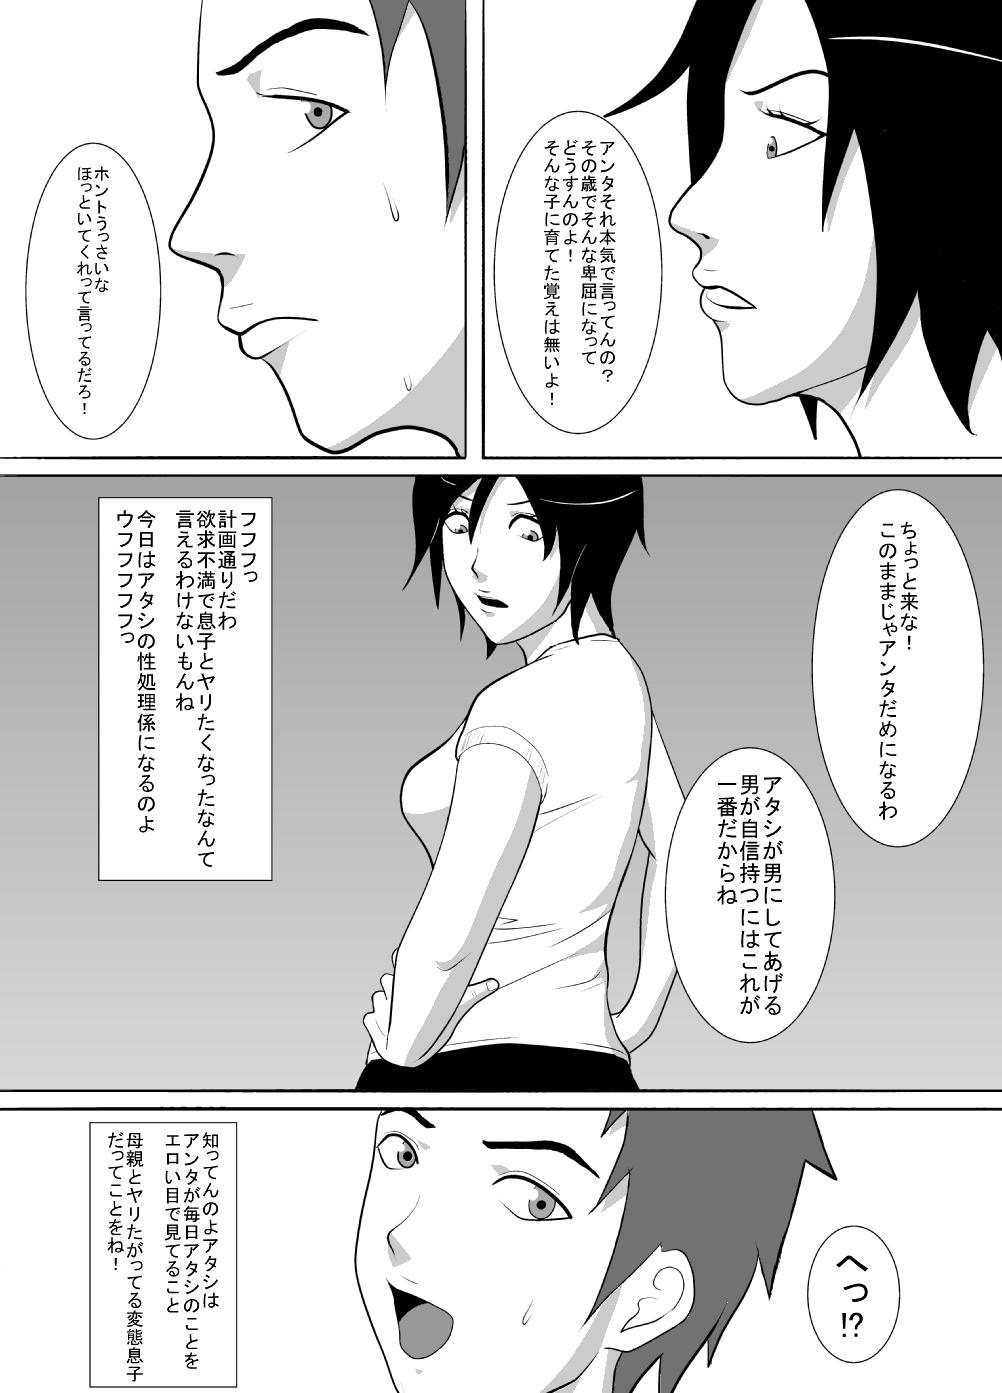 Jacking Off Musuko wa Doushiyou mo Nai Hentai Otoko deshita. Nude - Page 5